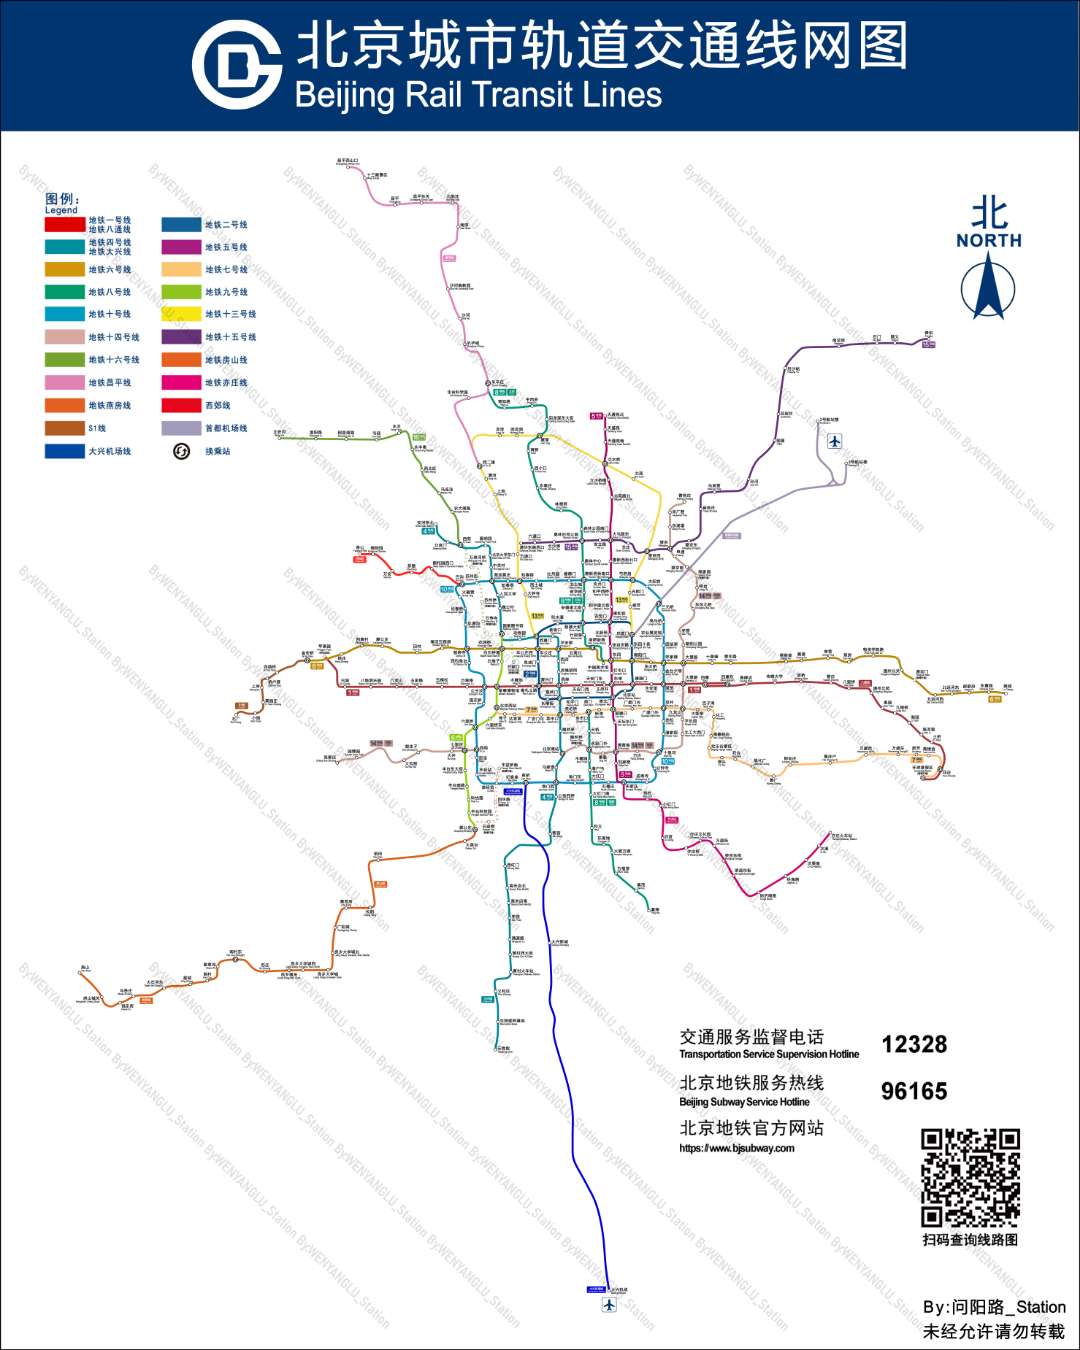 北京市域铁路线网图 虚线代表今年计划开通的线路 高清大图